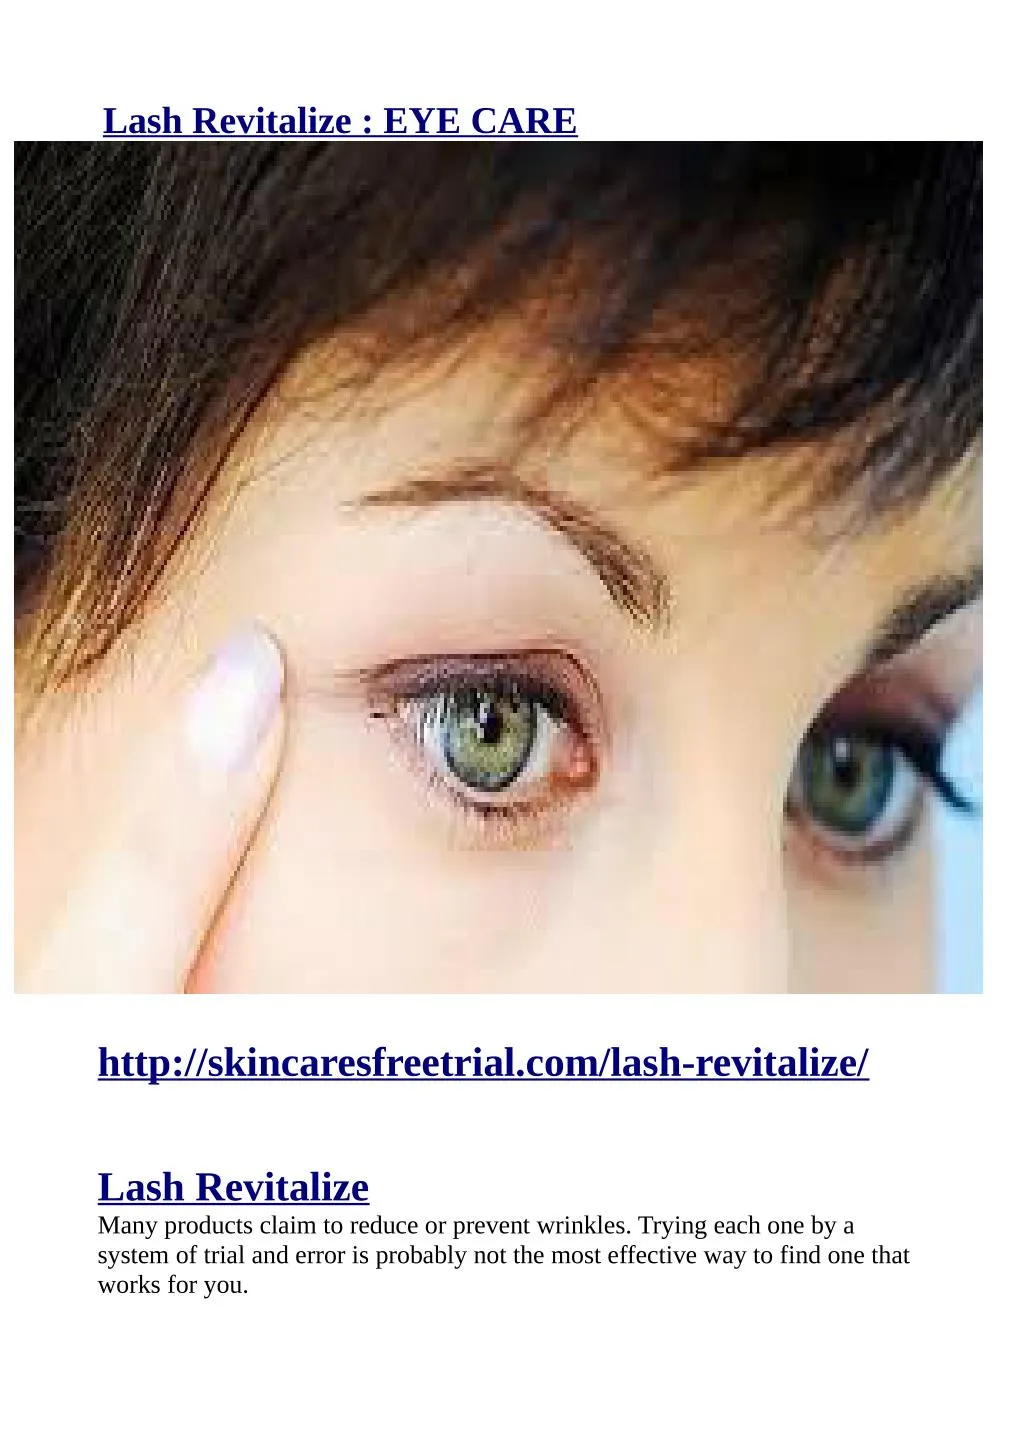 lash revitalize eye care